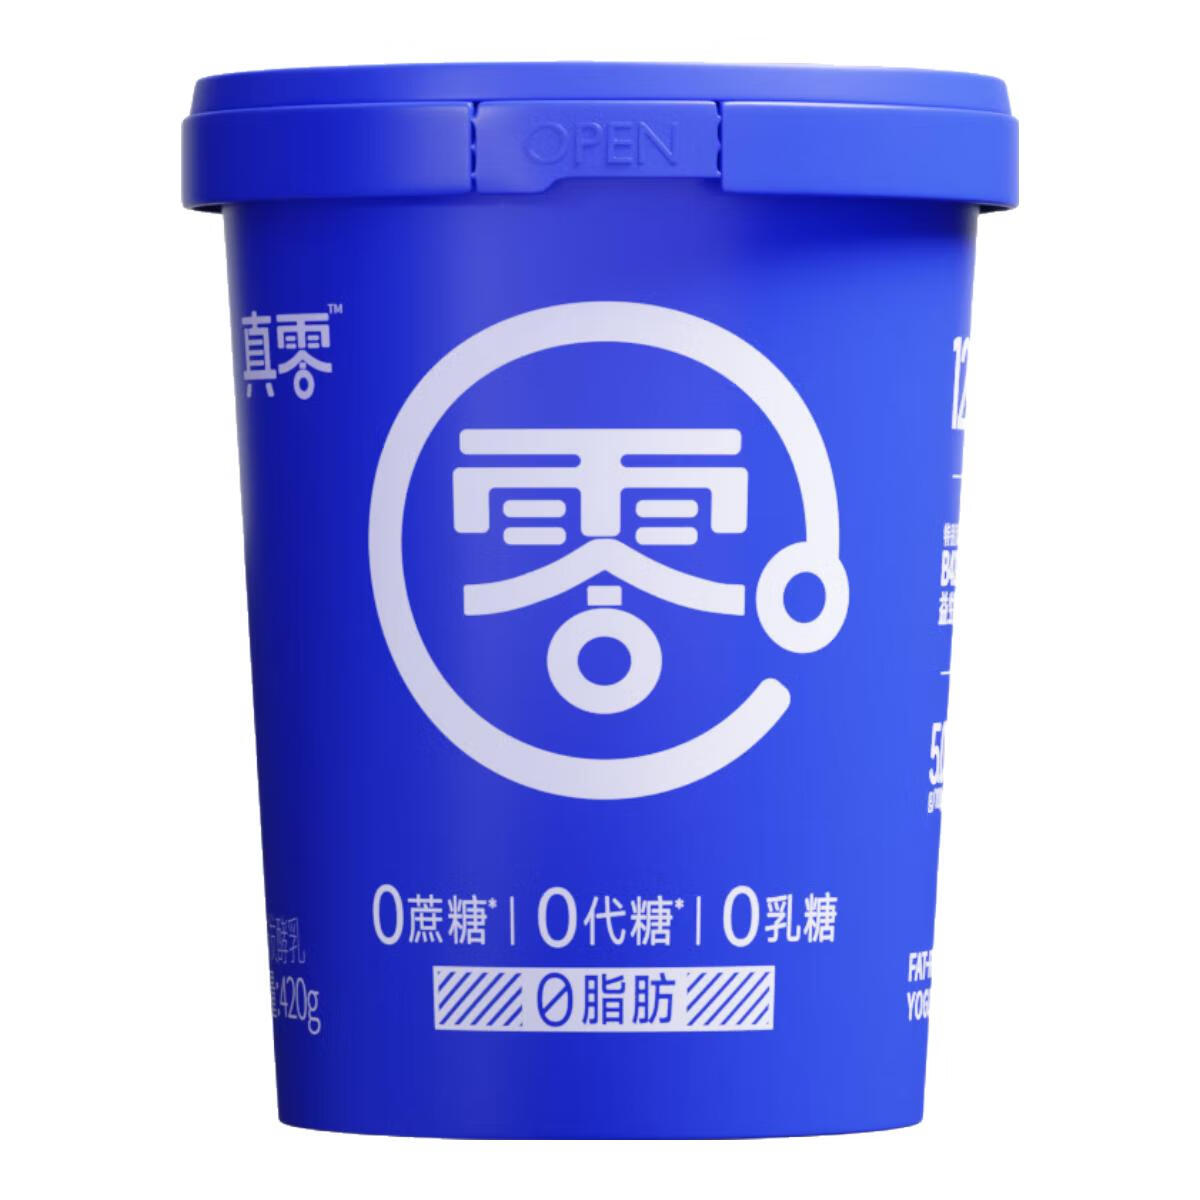 真零 小蓝罐酸奶 20g*4罐 63.5元